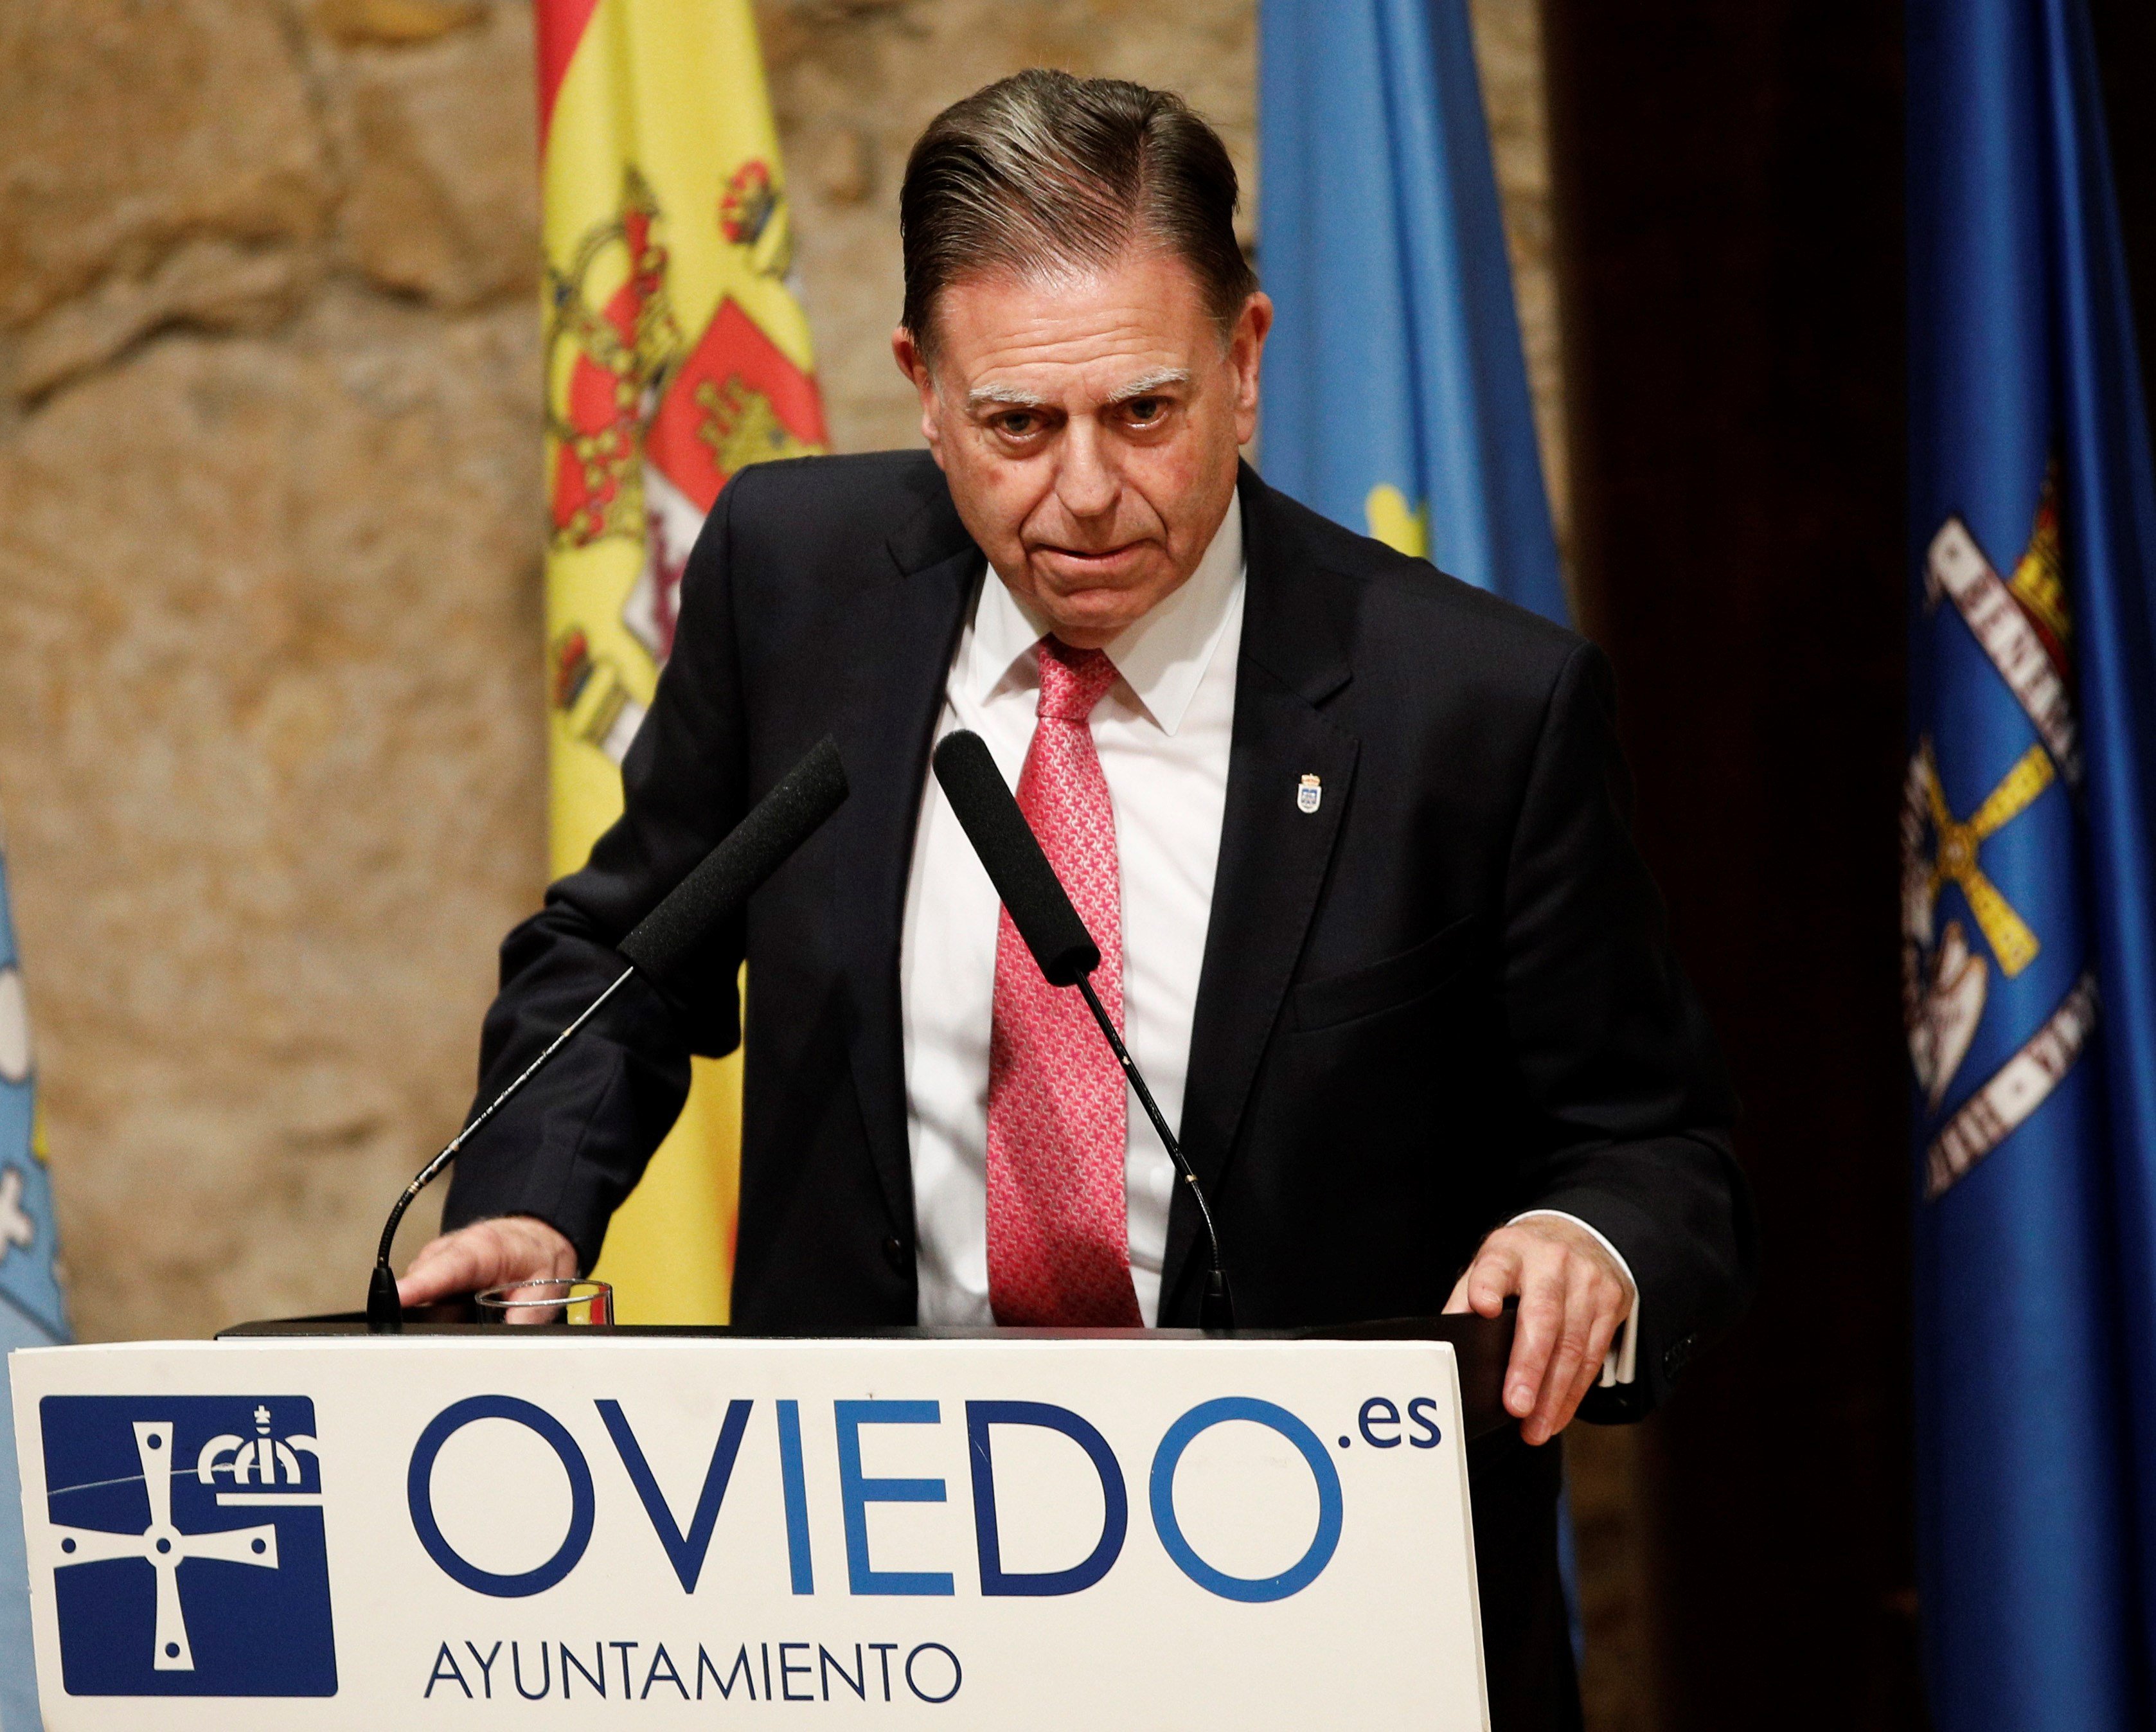 L'alcalde del PP d'Oviedo recupera els antics noms franquistes dels carrers